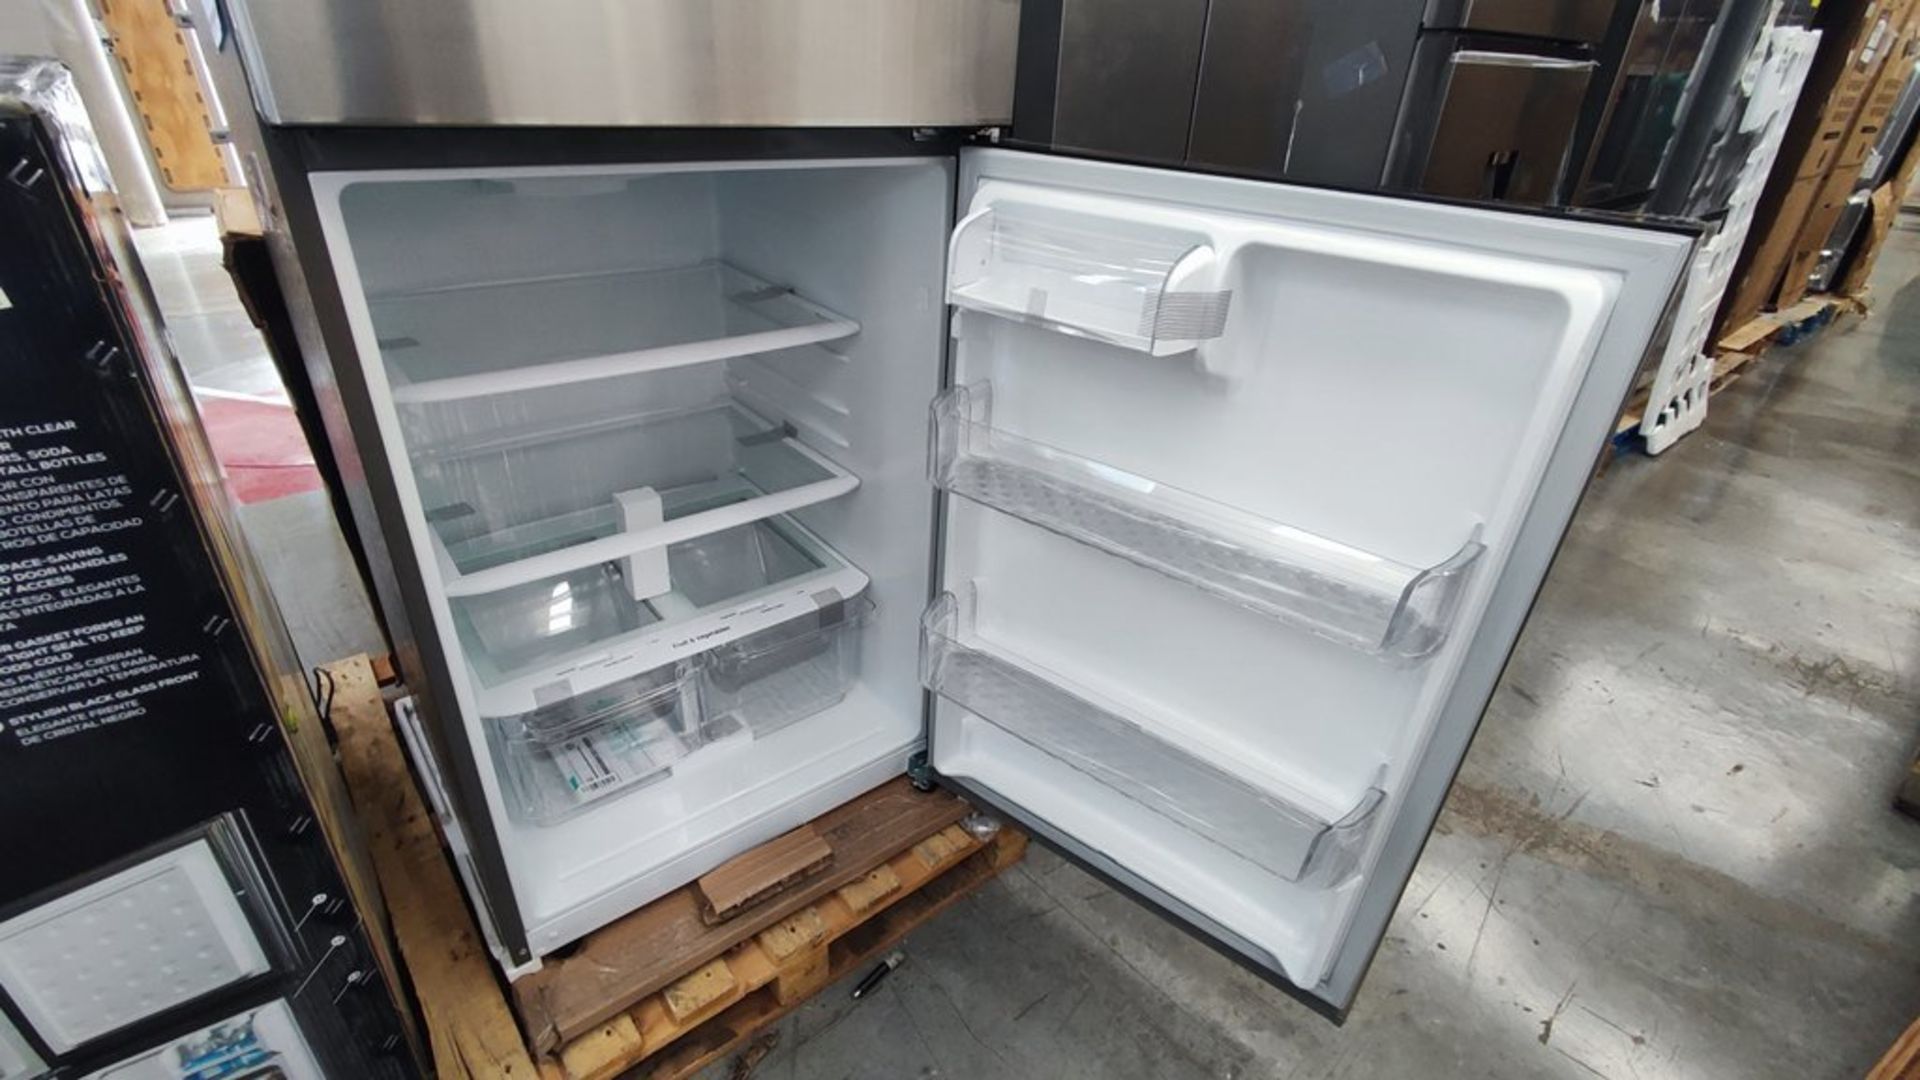 1 Refrigerador Marca LG, Modelo LT57BPSX, Serie 112MRVY1P862, Color Gris, Favor de inspeccionar. (N - Image 9 of 11